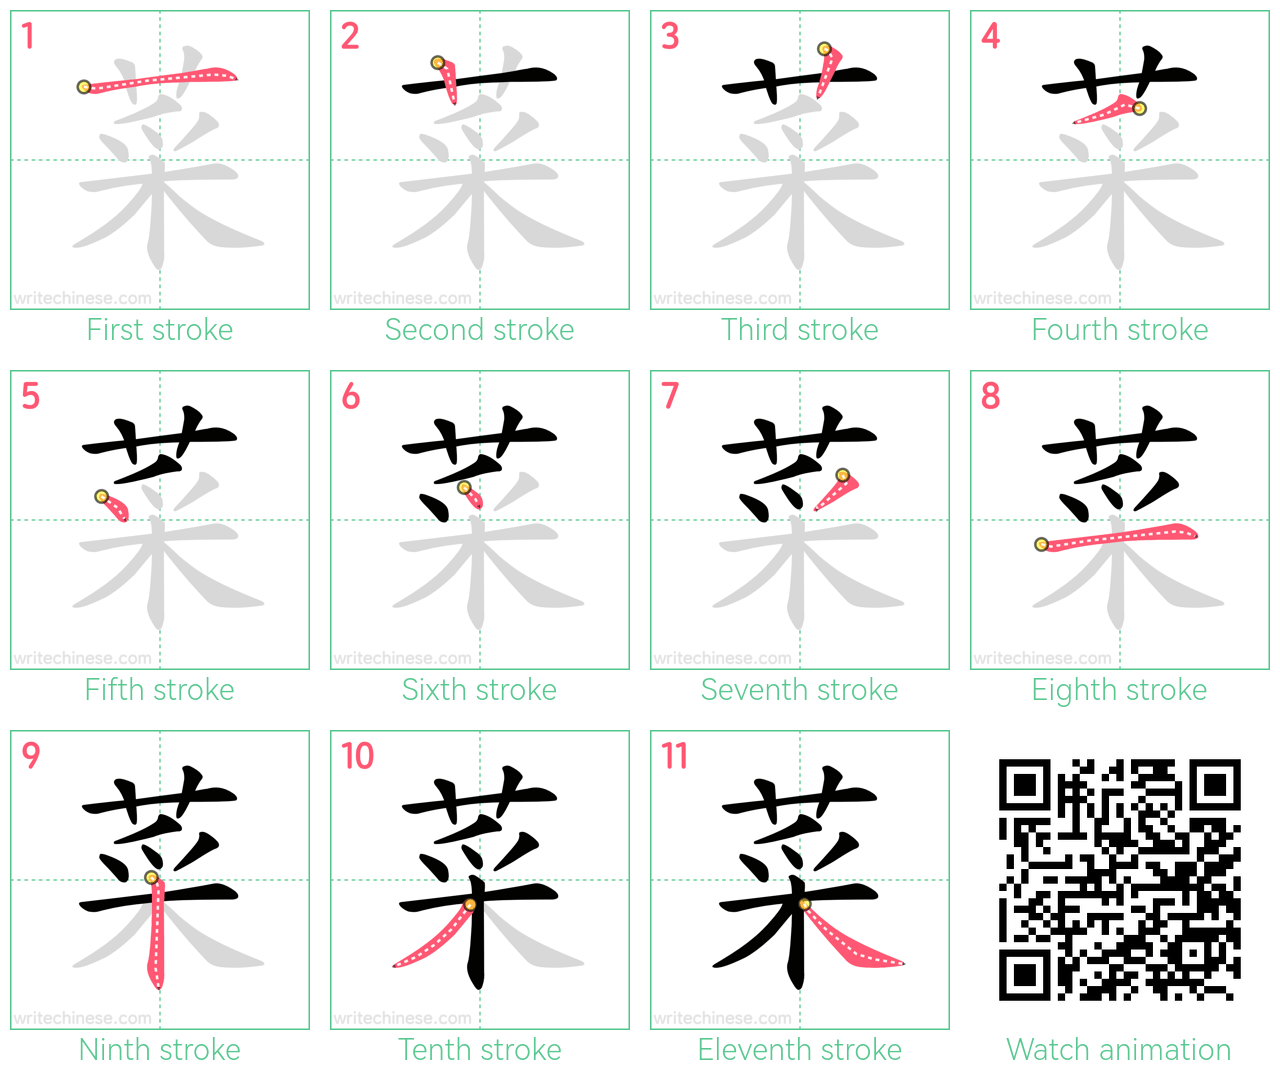 菜 step-by-step stroke order diagrams